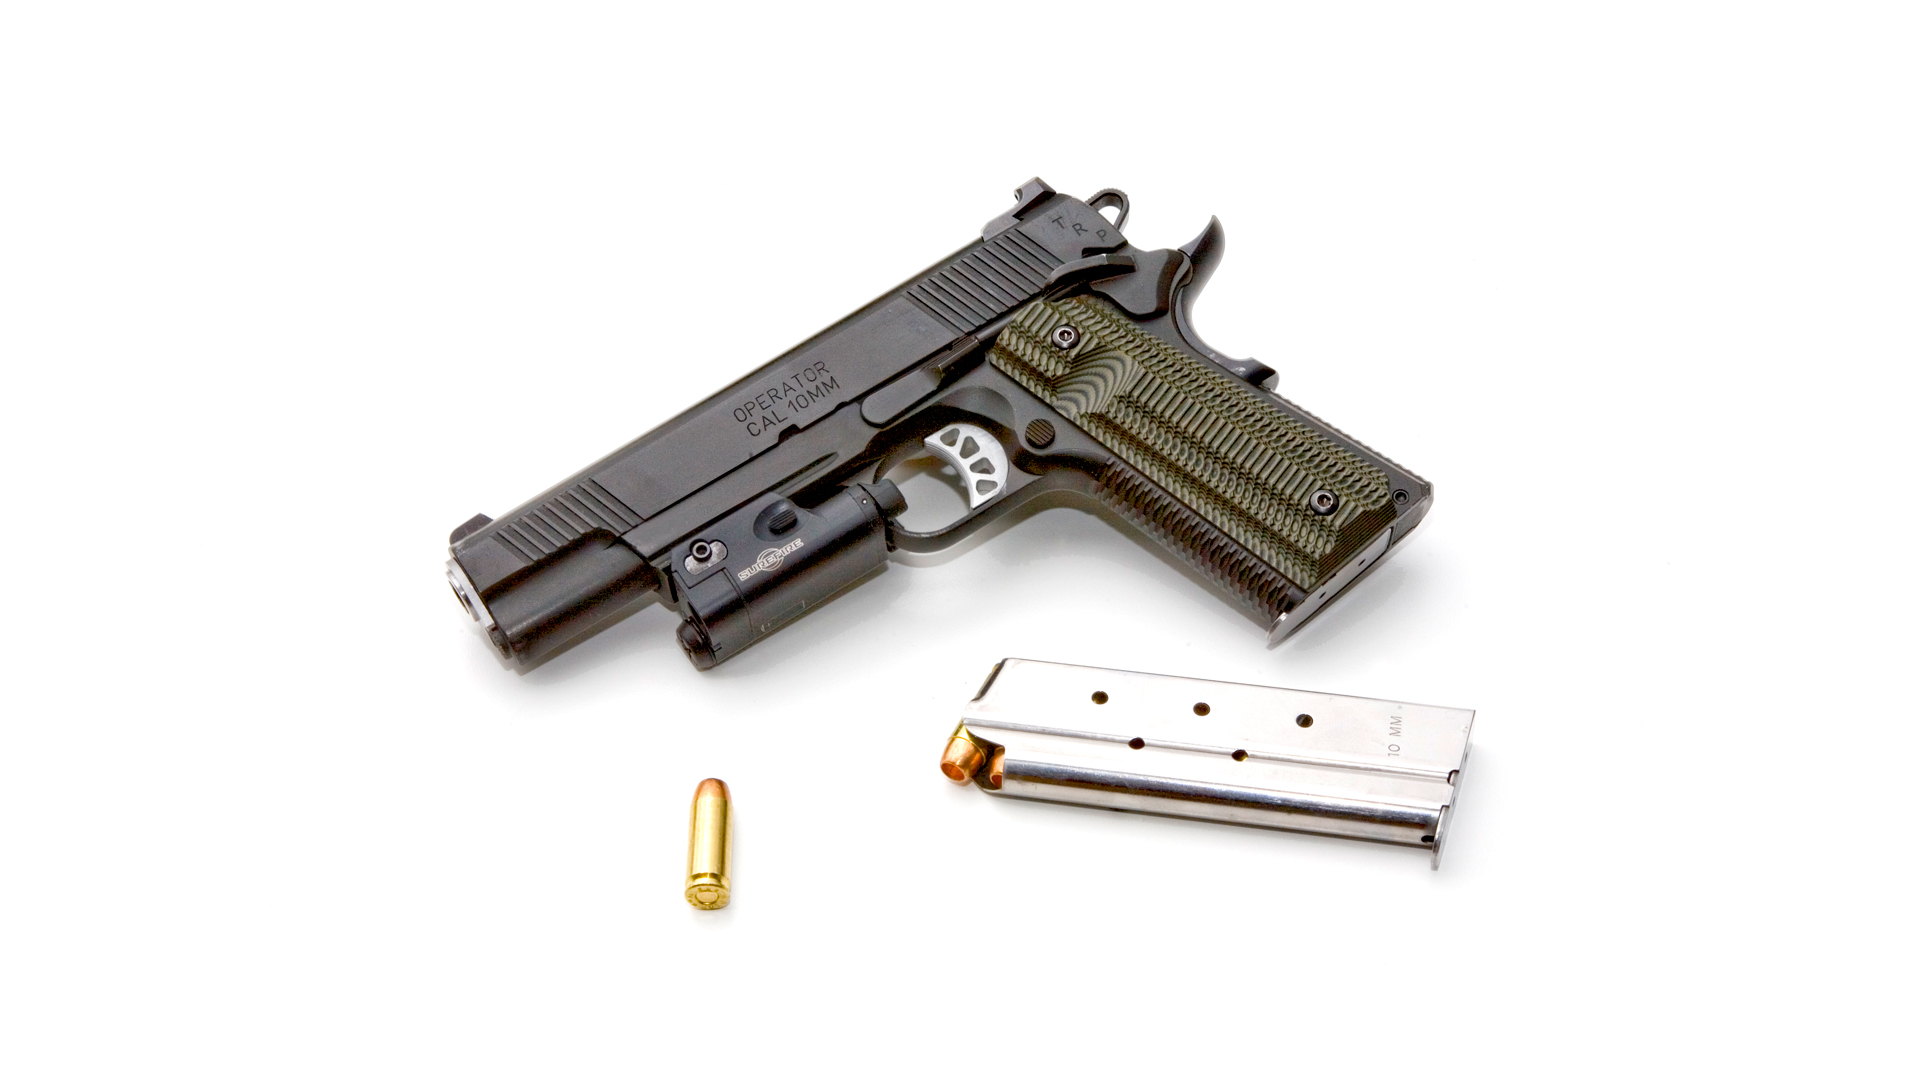 Fn 510 Mrd e Fn 545 Mrd, due pistole per la difesa personale e abitativa -  Armi Magazine